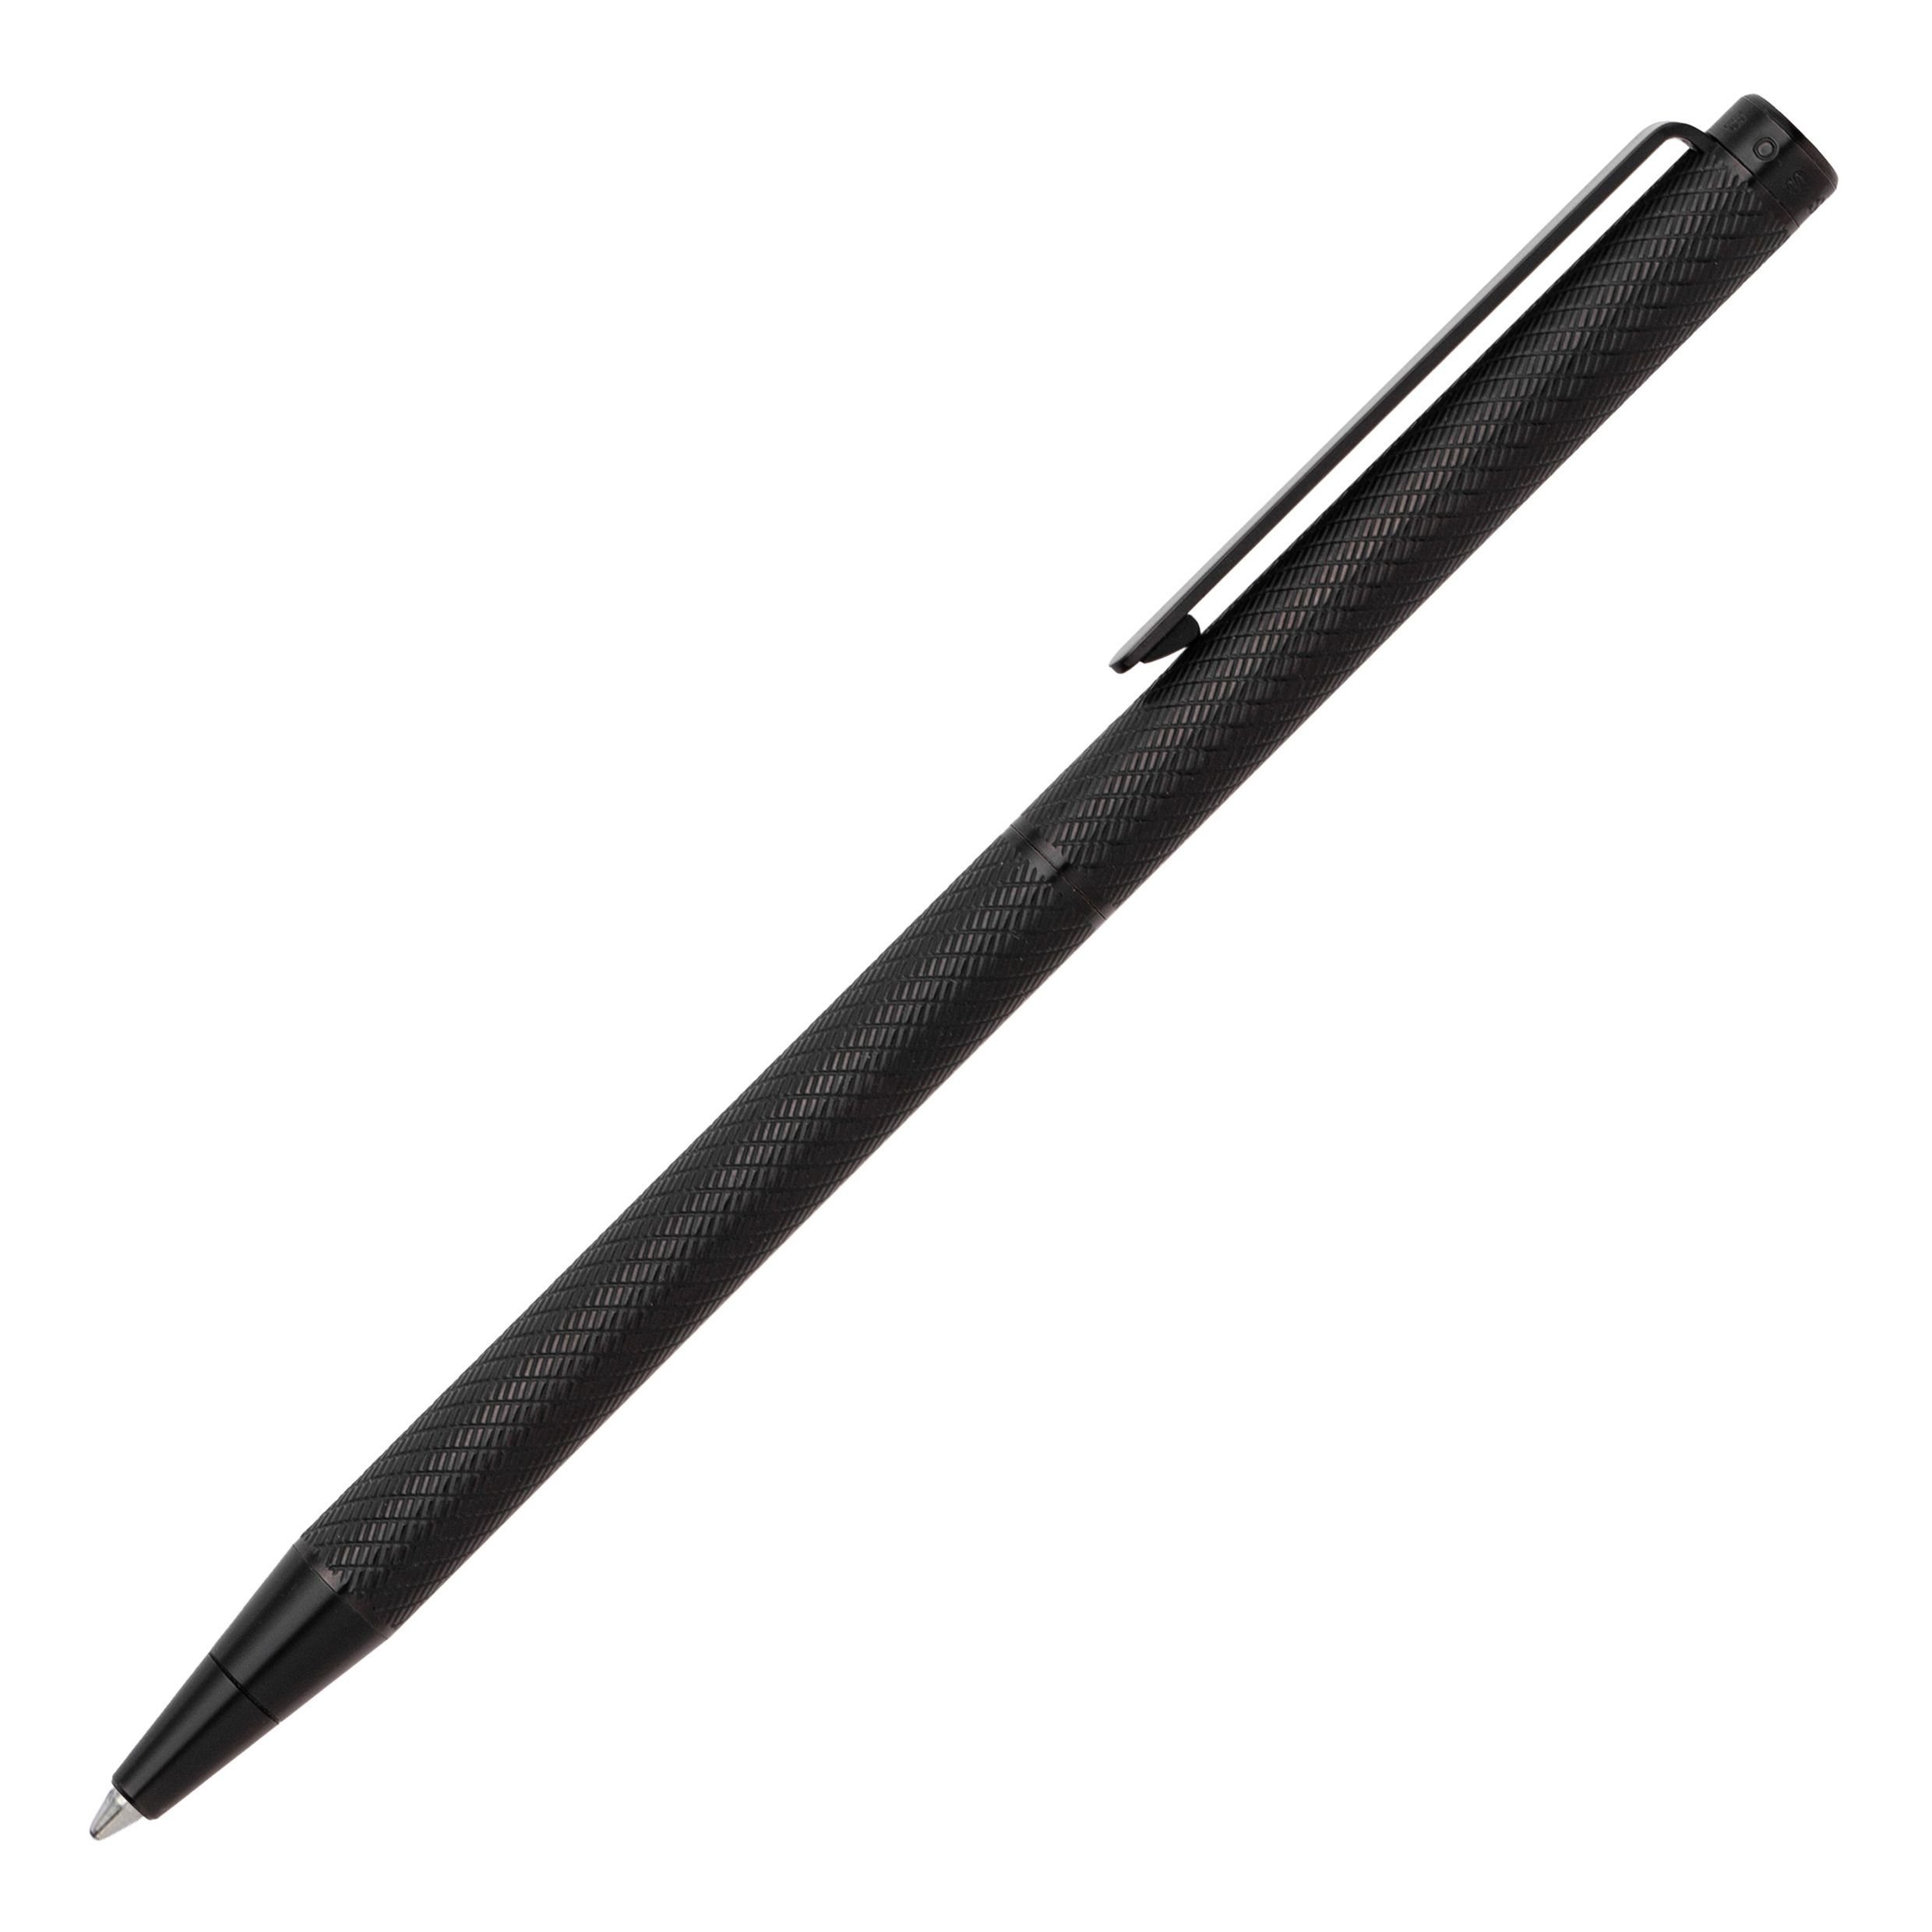 BOSS Kugelschreiber schlanker Hugo Boss Pen Cloud Schwarz, Kugelschreiber Set) (kein Ballpoint Black